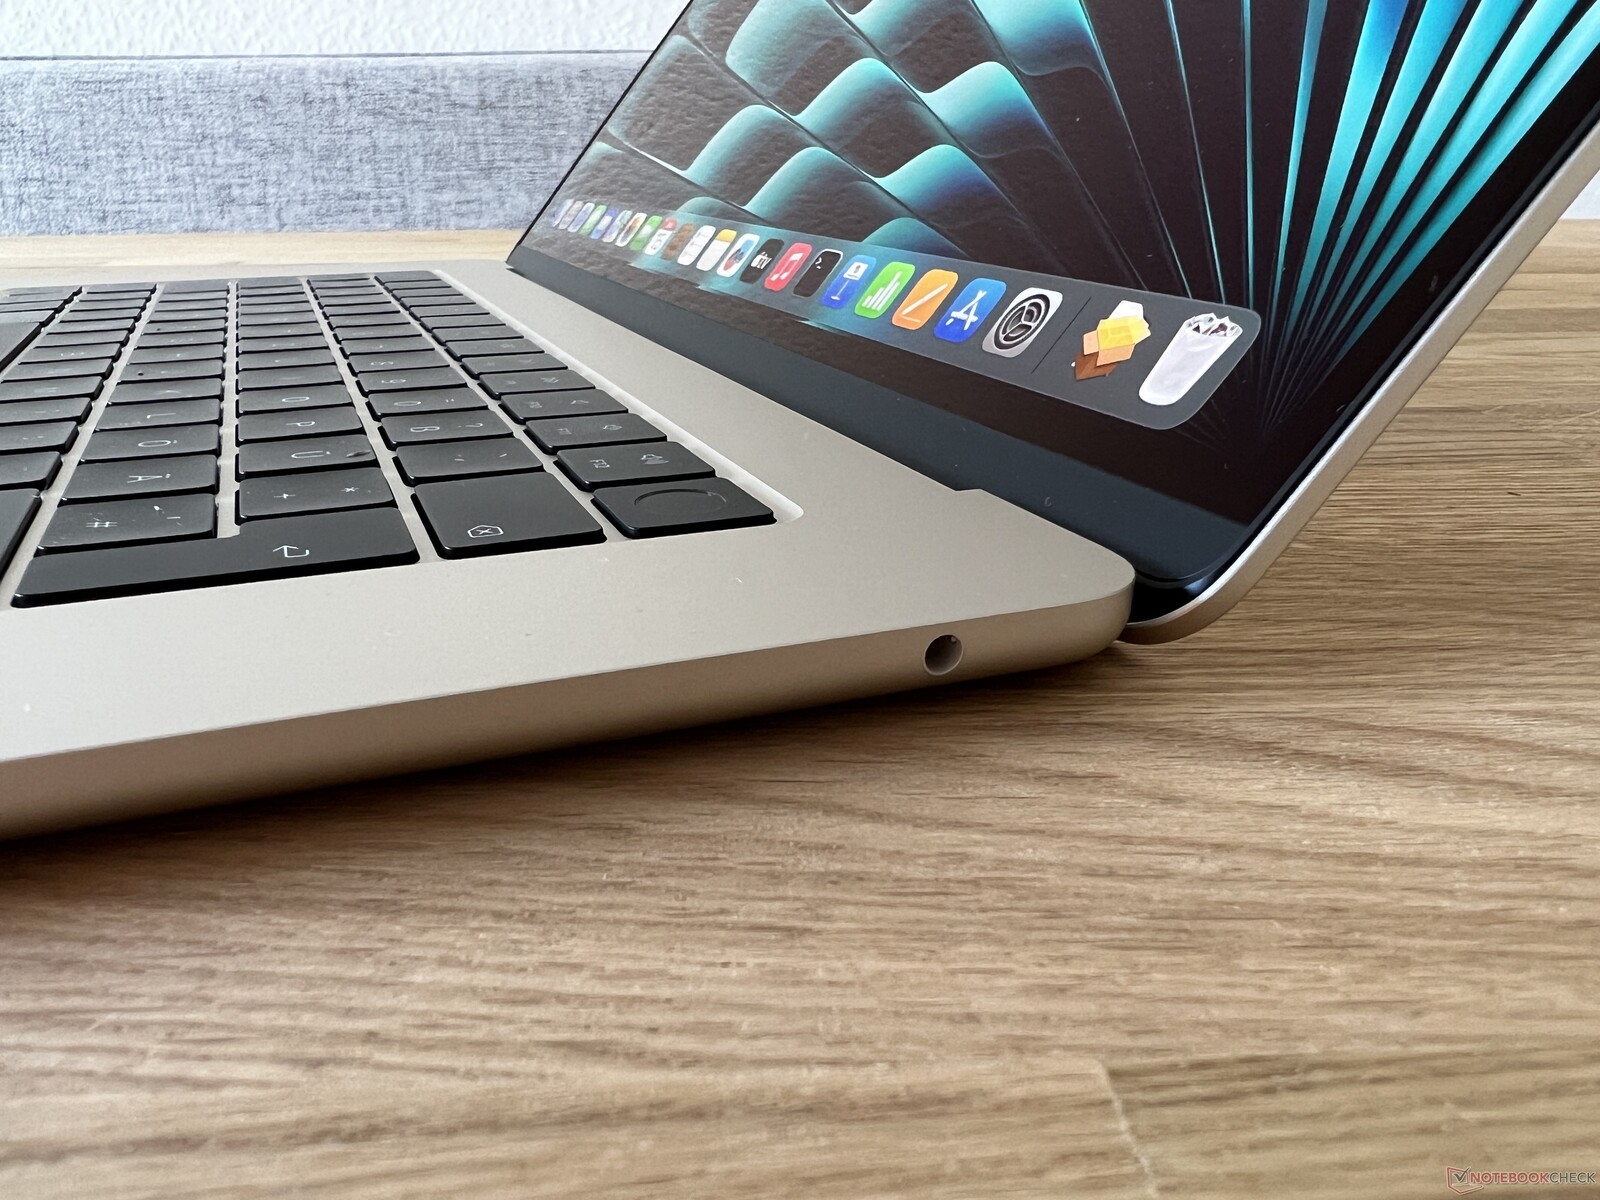 Apple MacBook Air 15 inch 2023 Starlight Modèle 3D - Télécharger  Électronique on